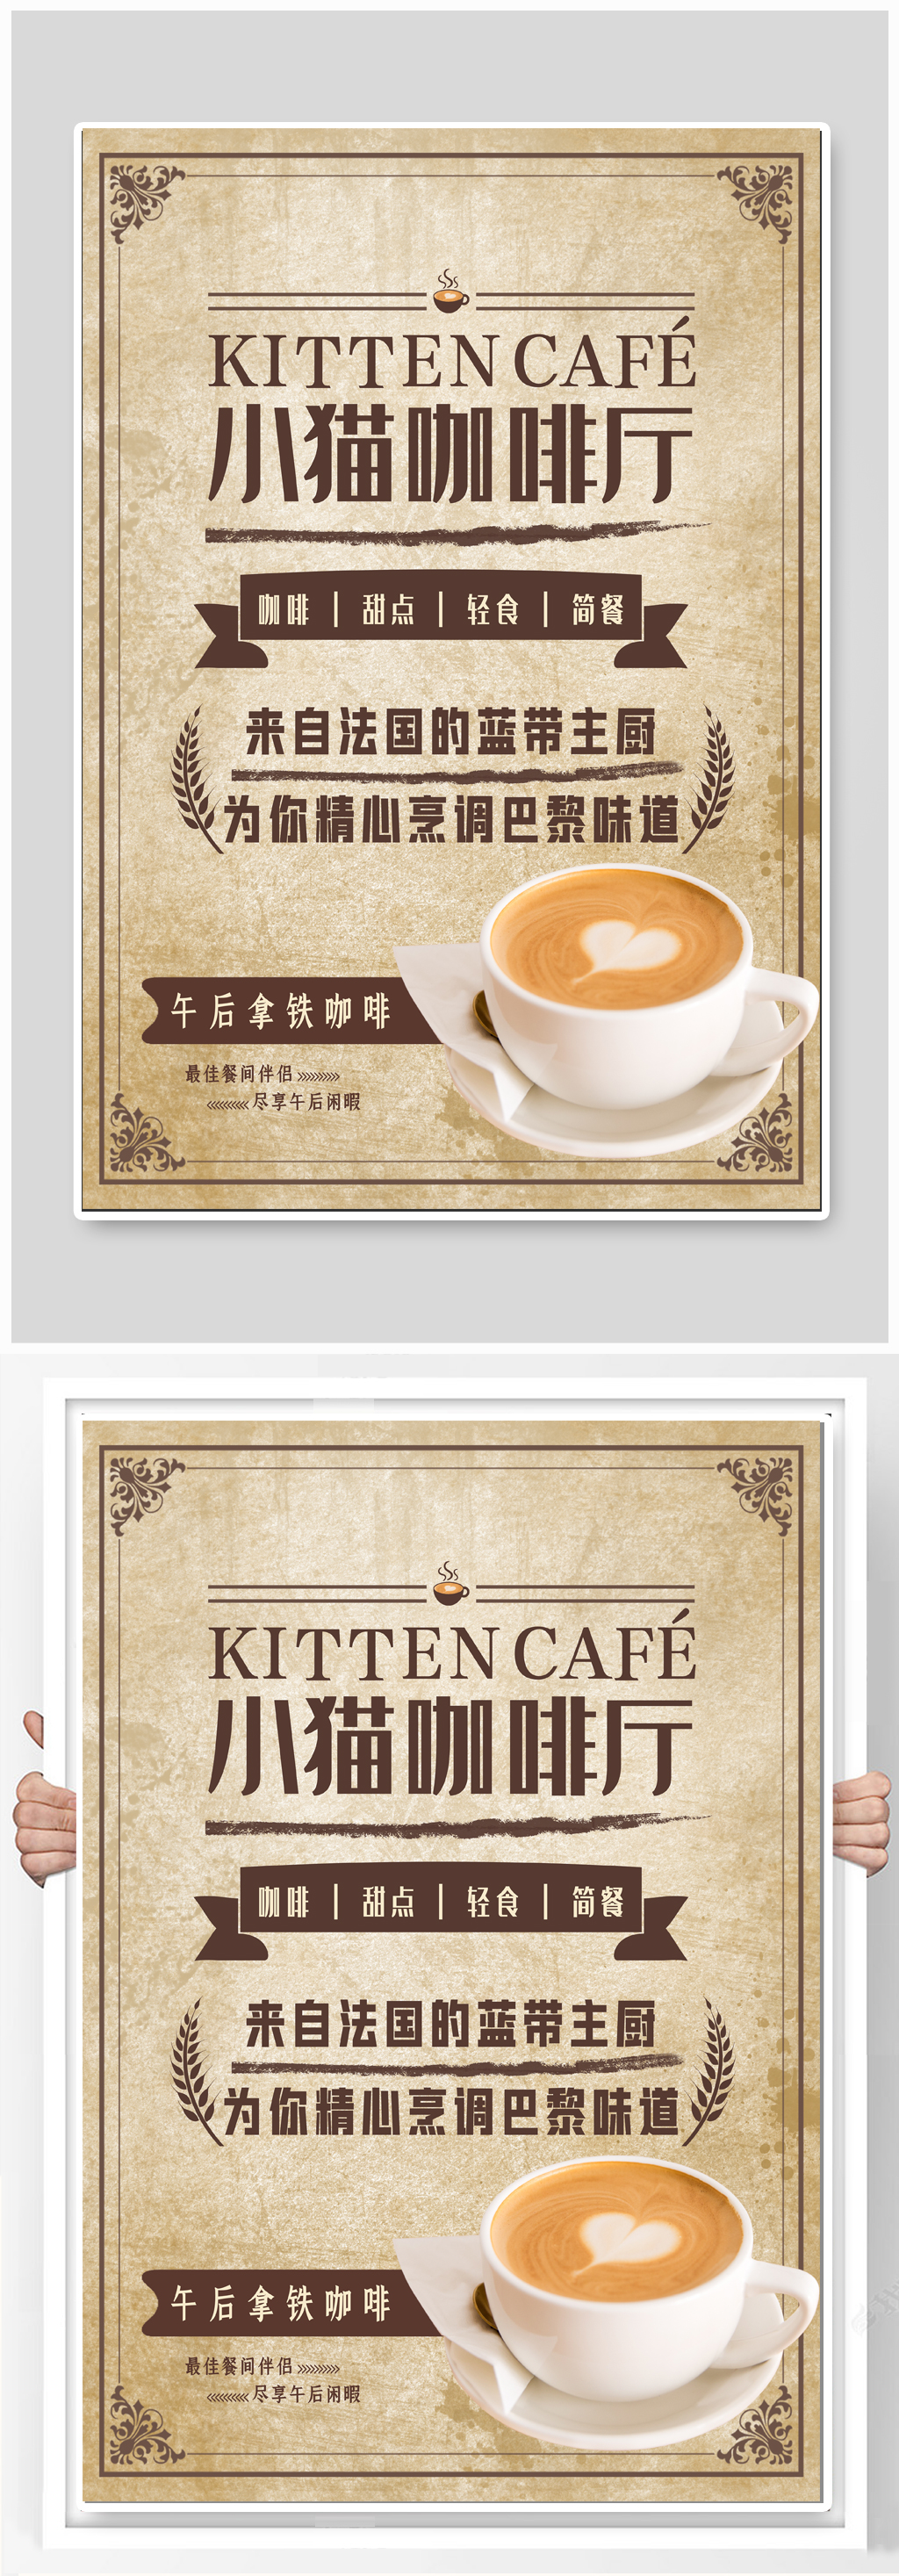 咖啡厅咖啡馆宣传海报